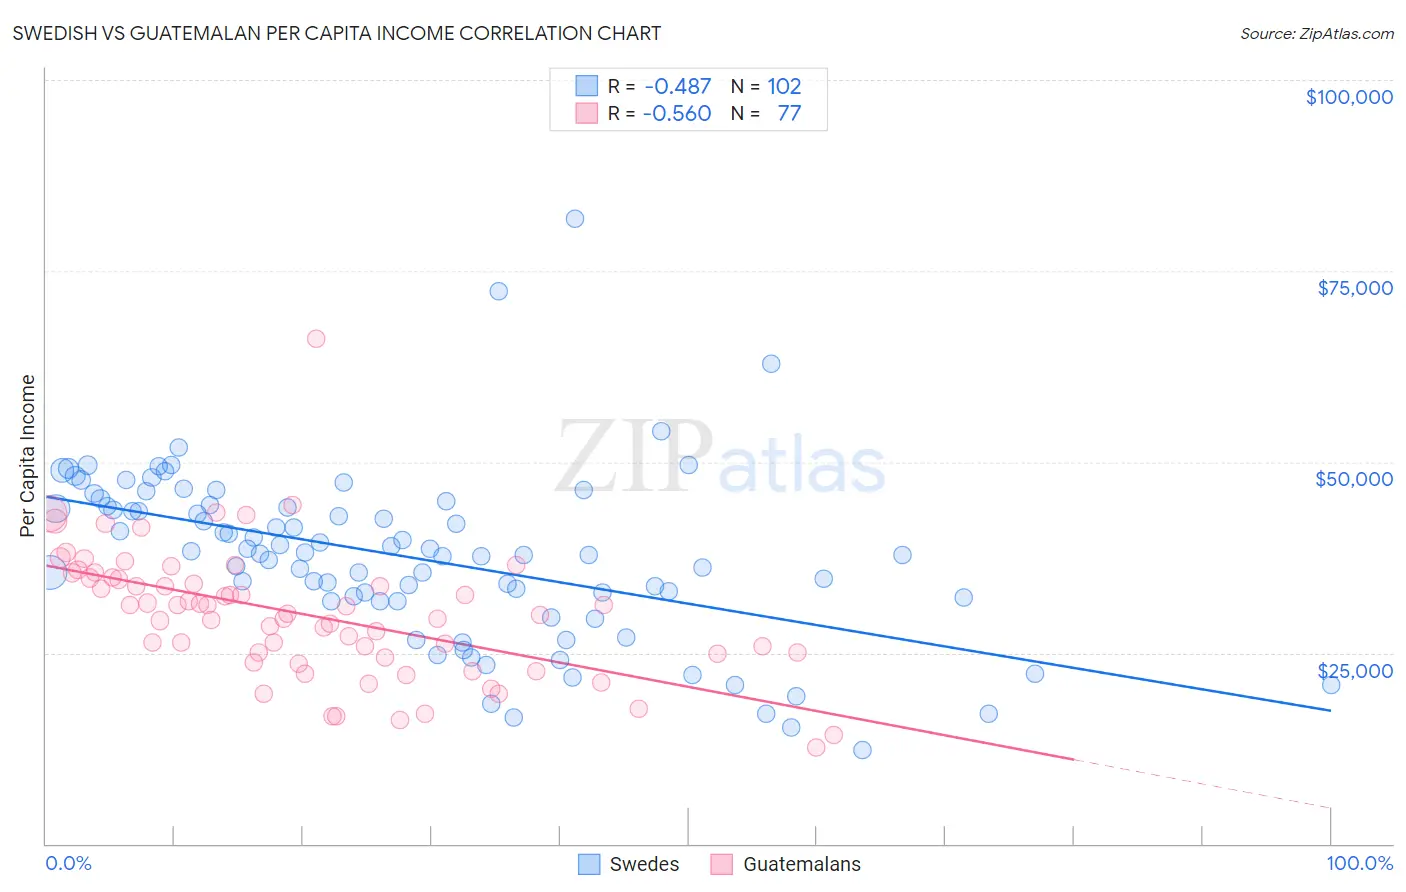 Swedish vs Guatemalan Per Capita Income